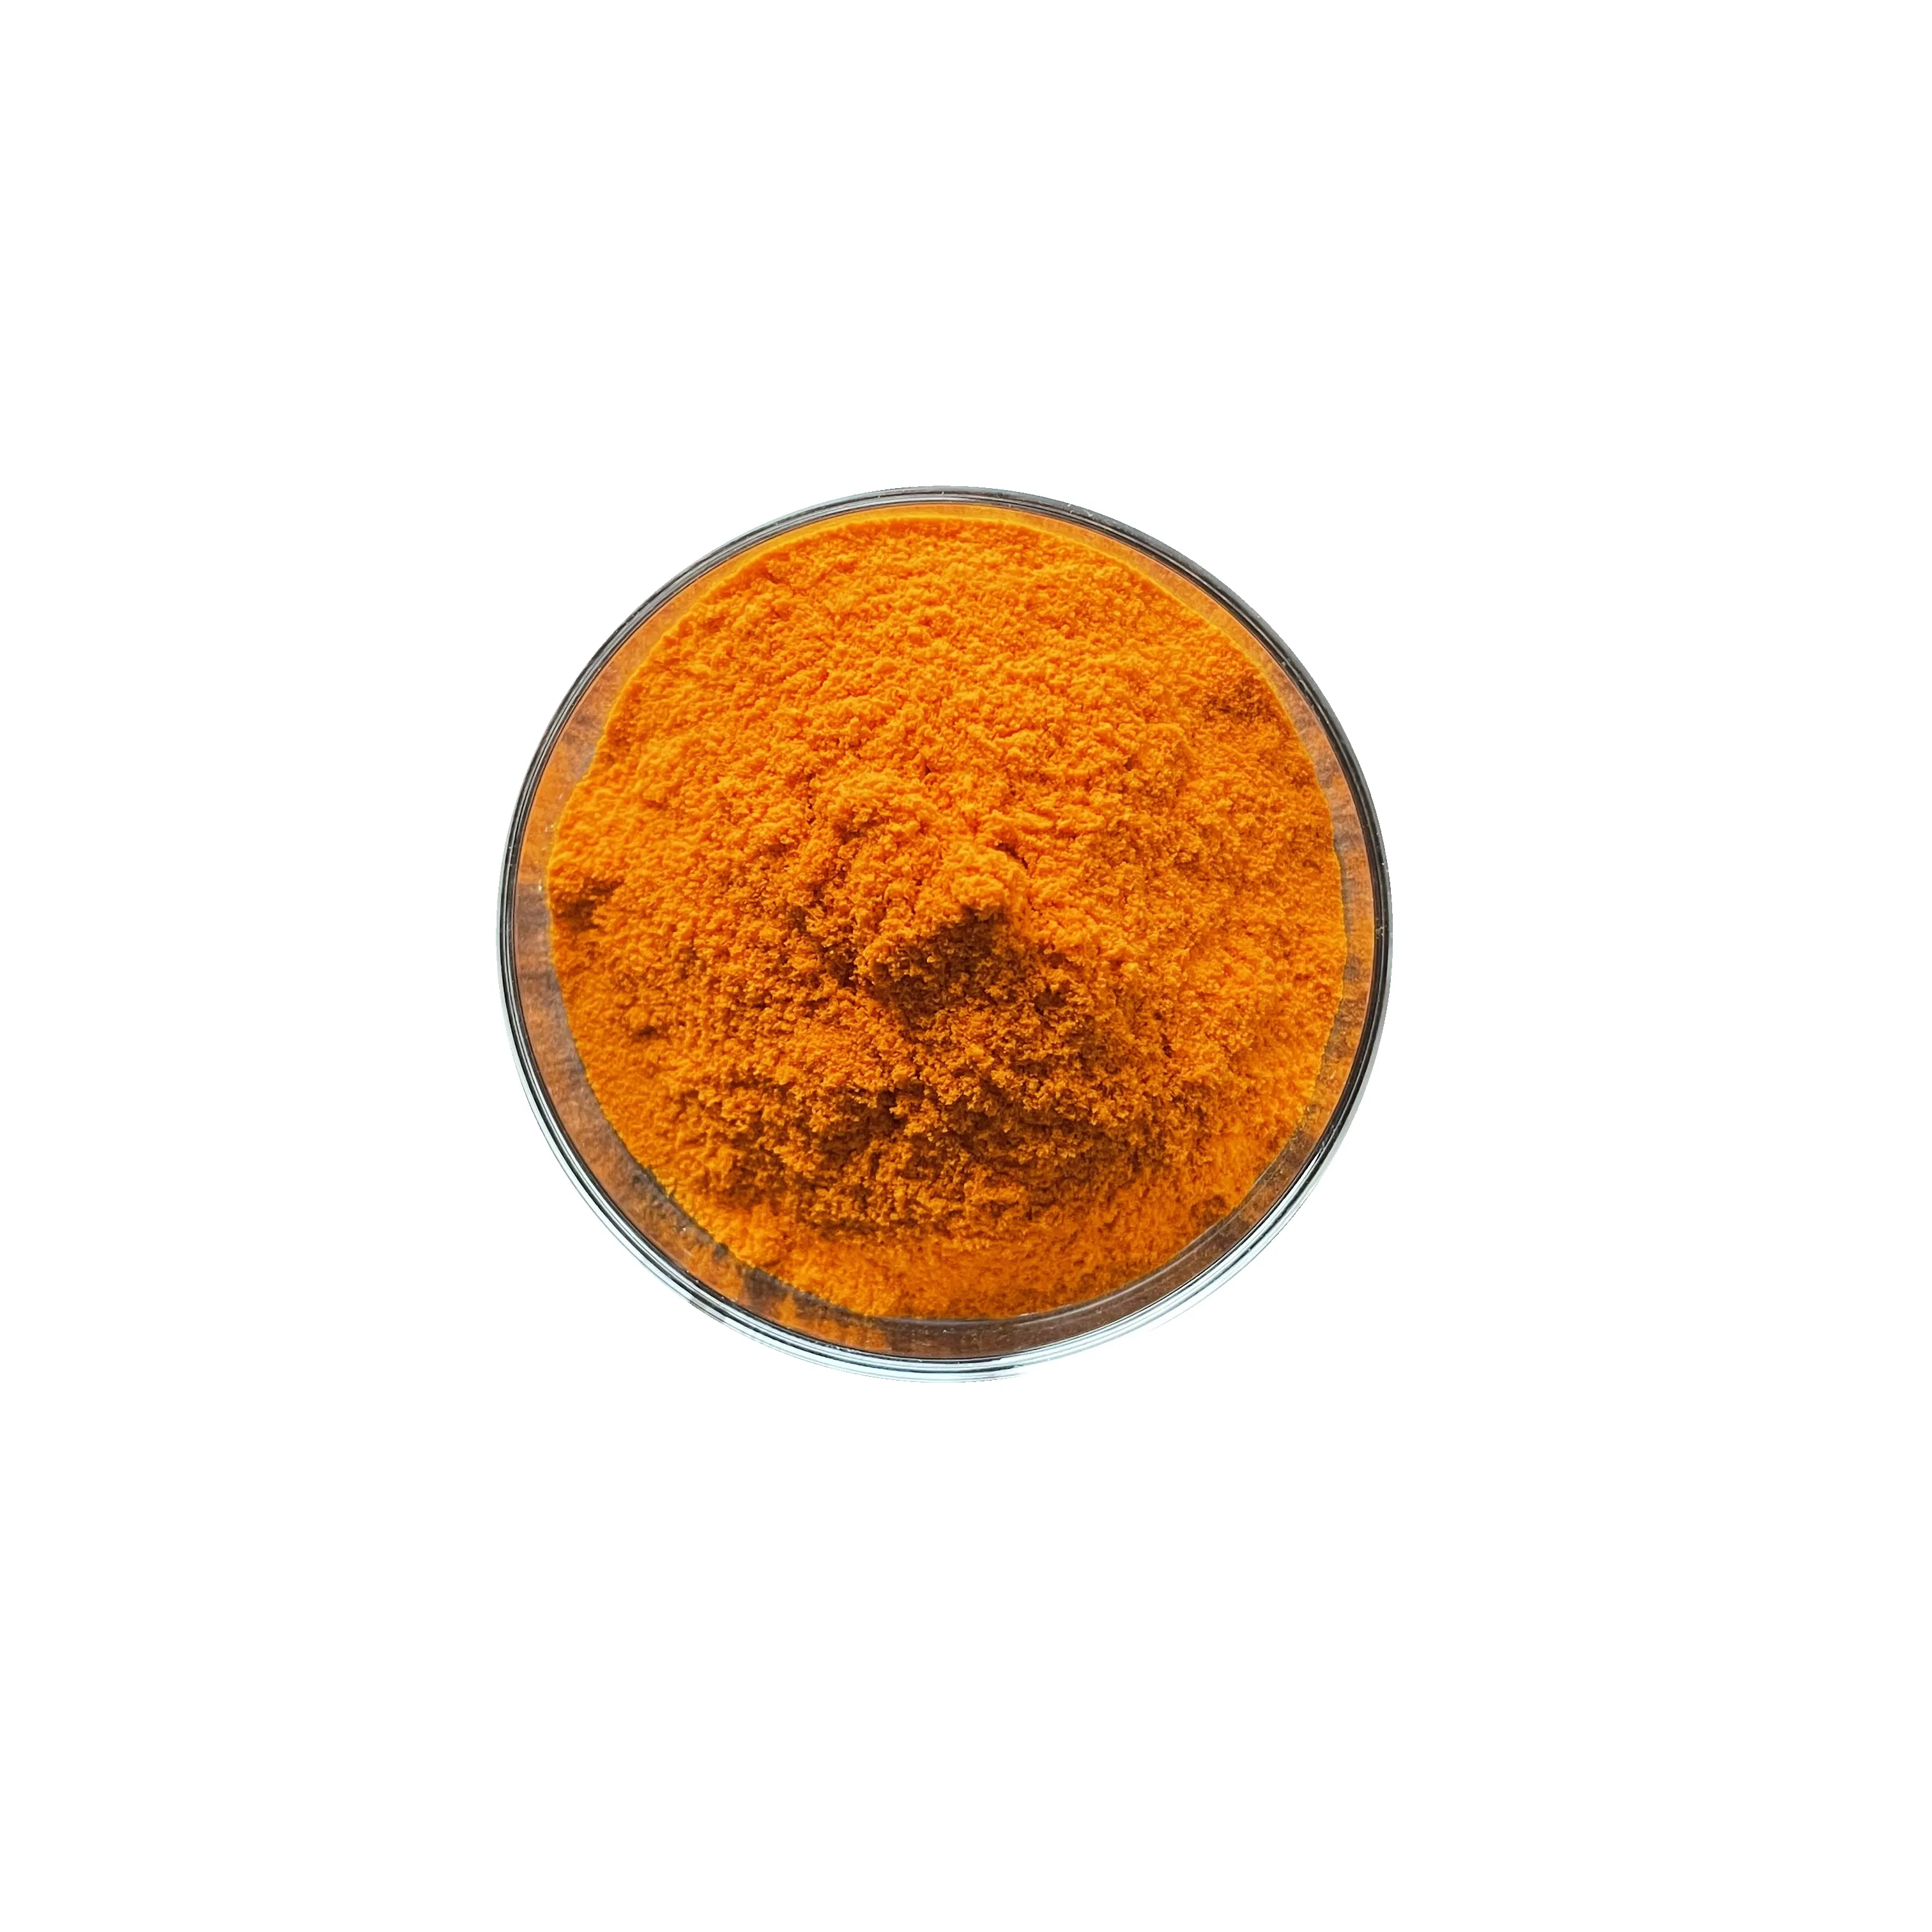 Natural Pigments Safflower Saffron Yellow Food Colour Powder Saffron Extract Powder